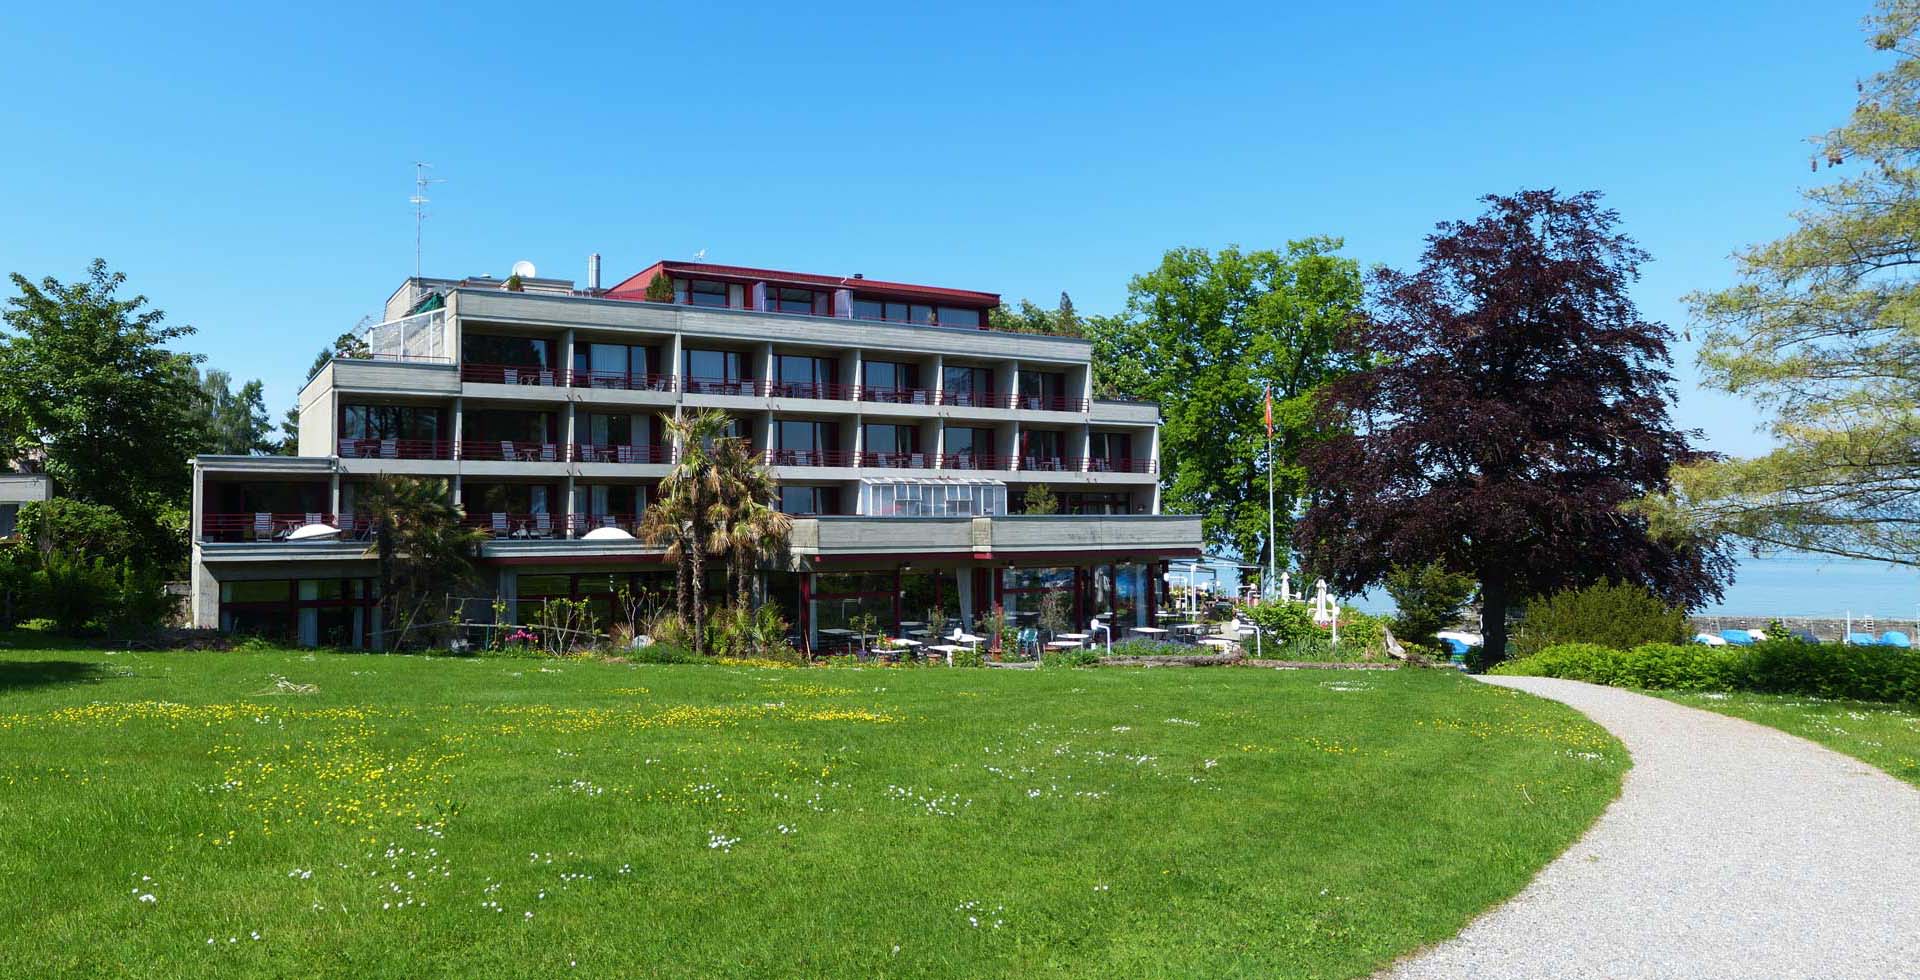 Slide Park-Hotel Inseli-Romanshorn-cr111k-1920x980